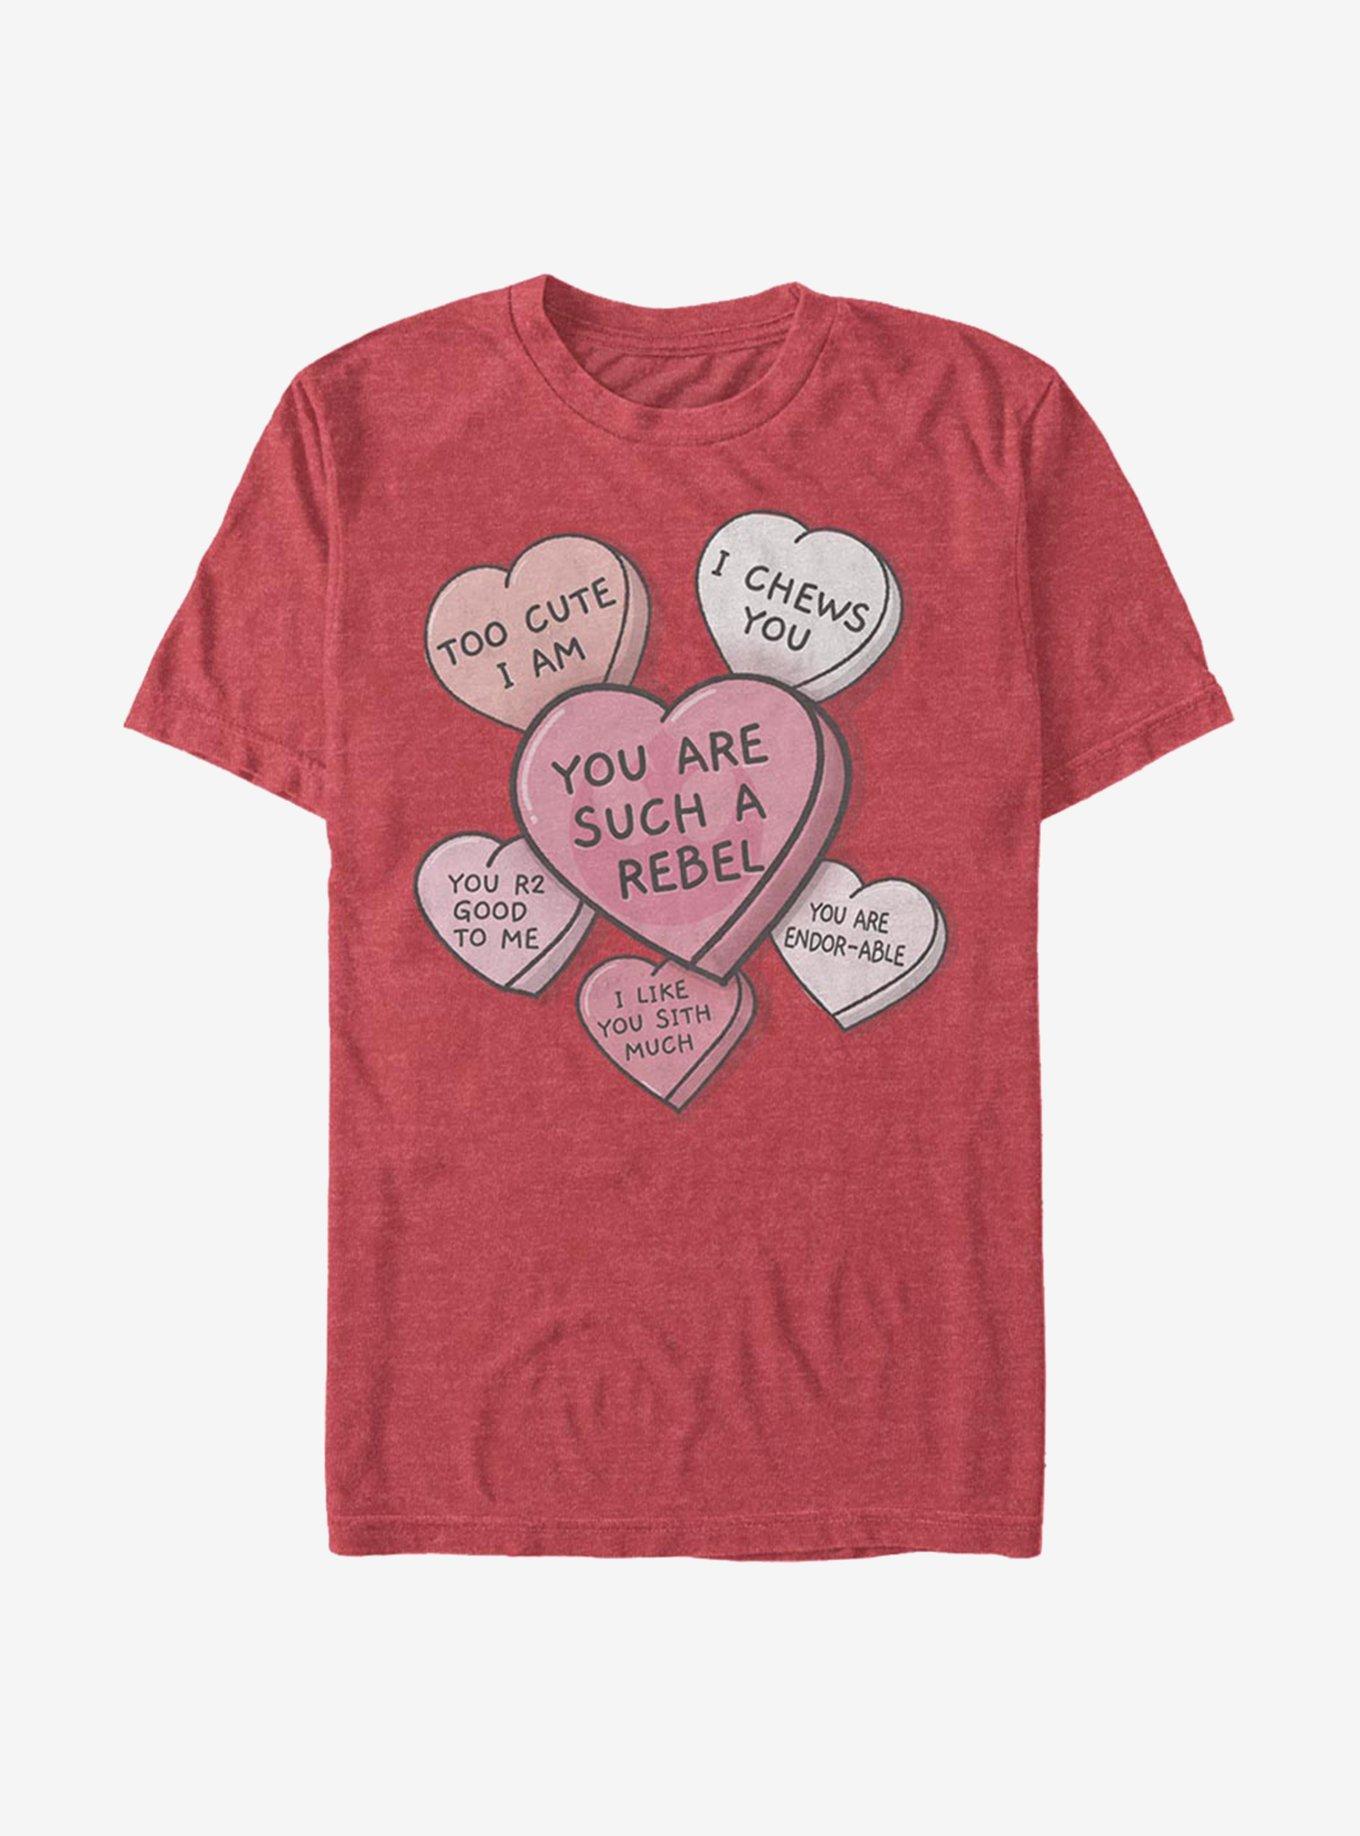 Star Wars Candy Hearts T-Shirt, , hi-res